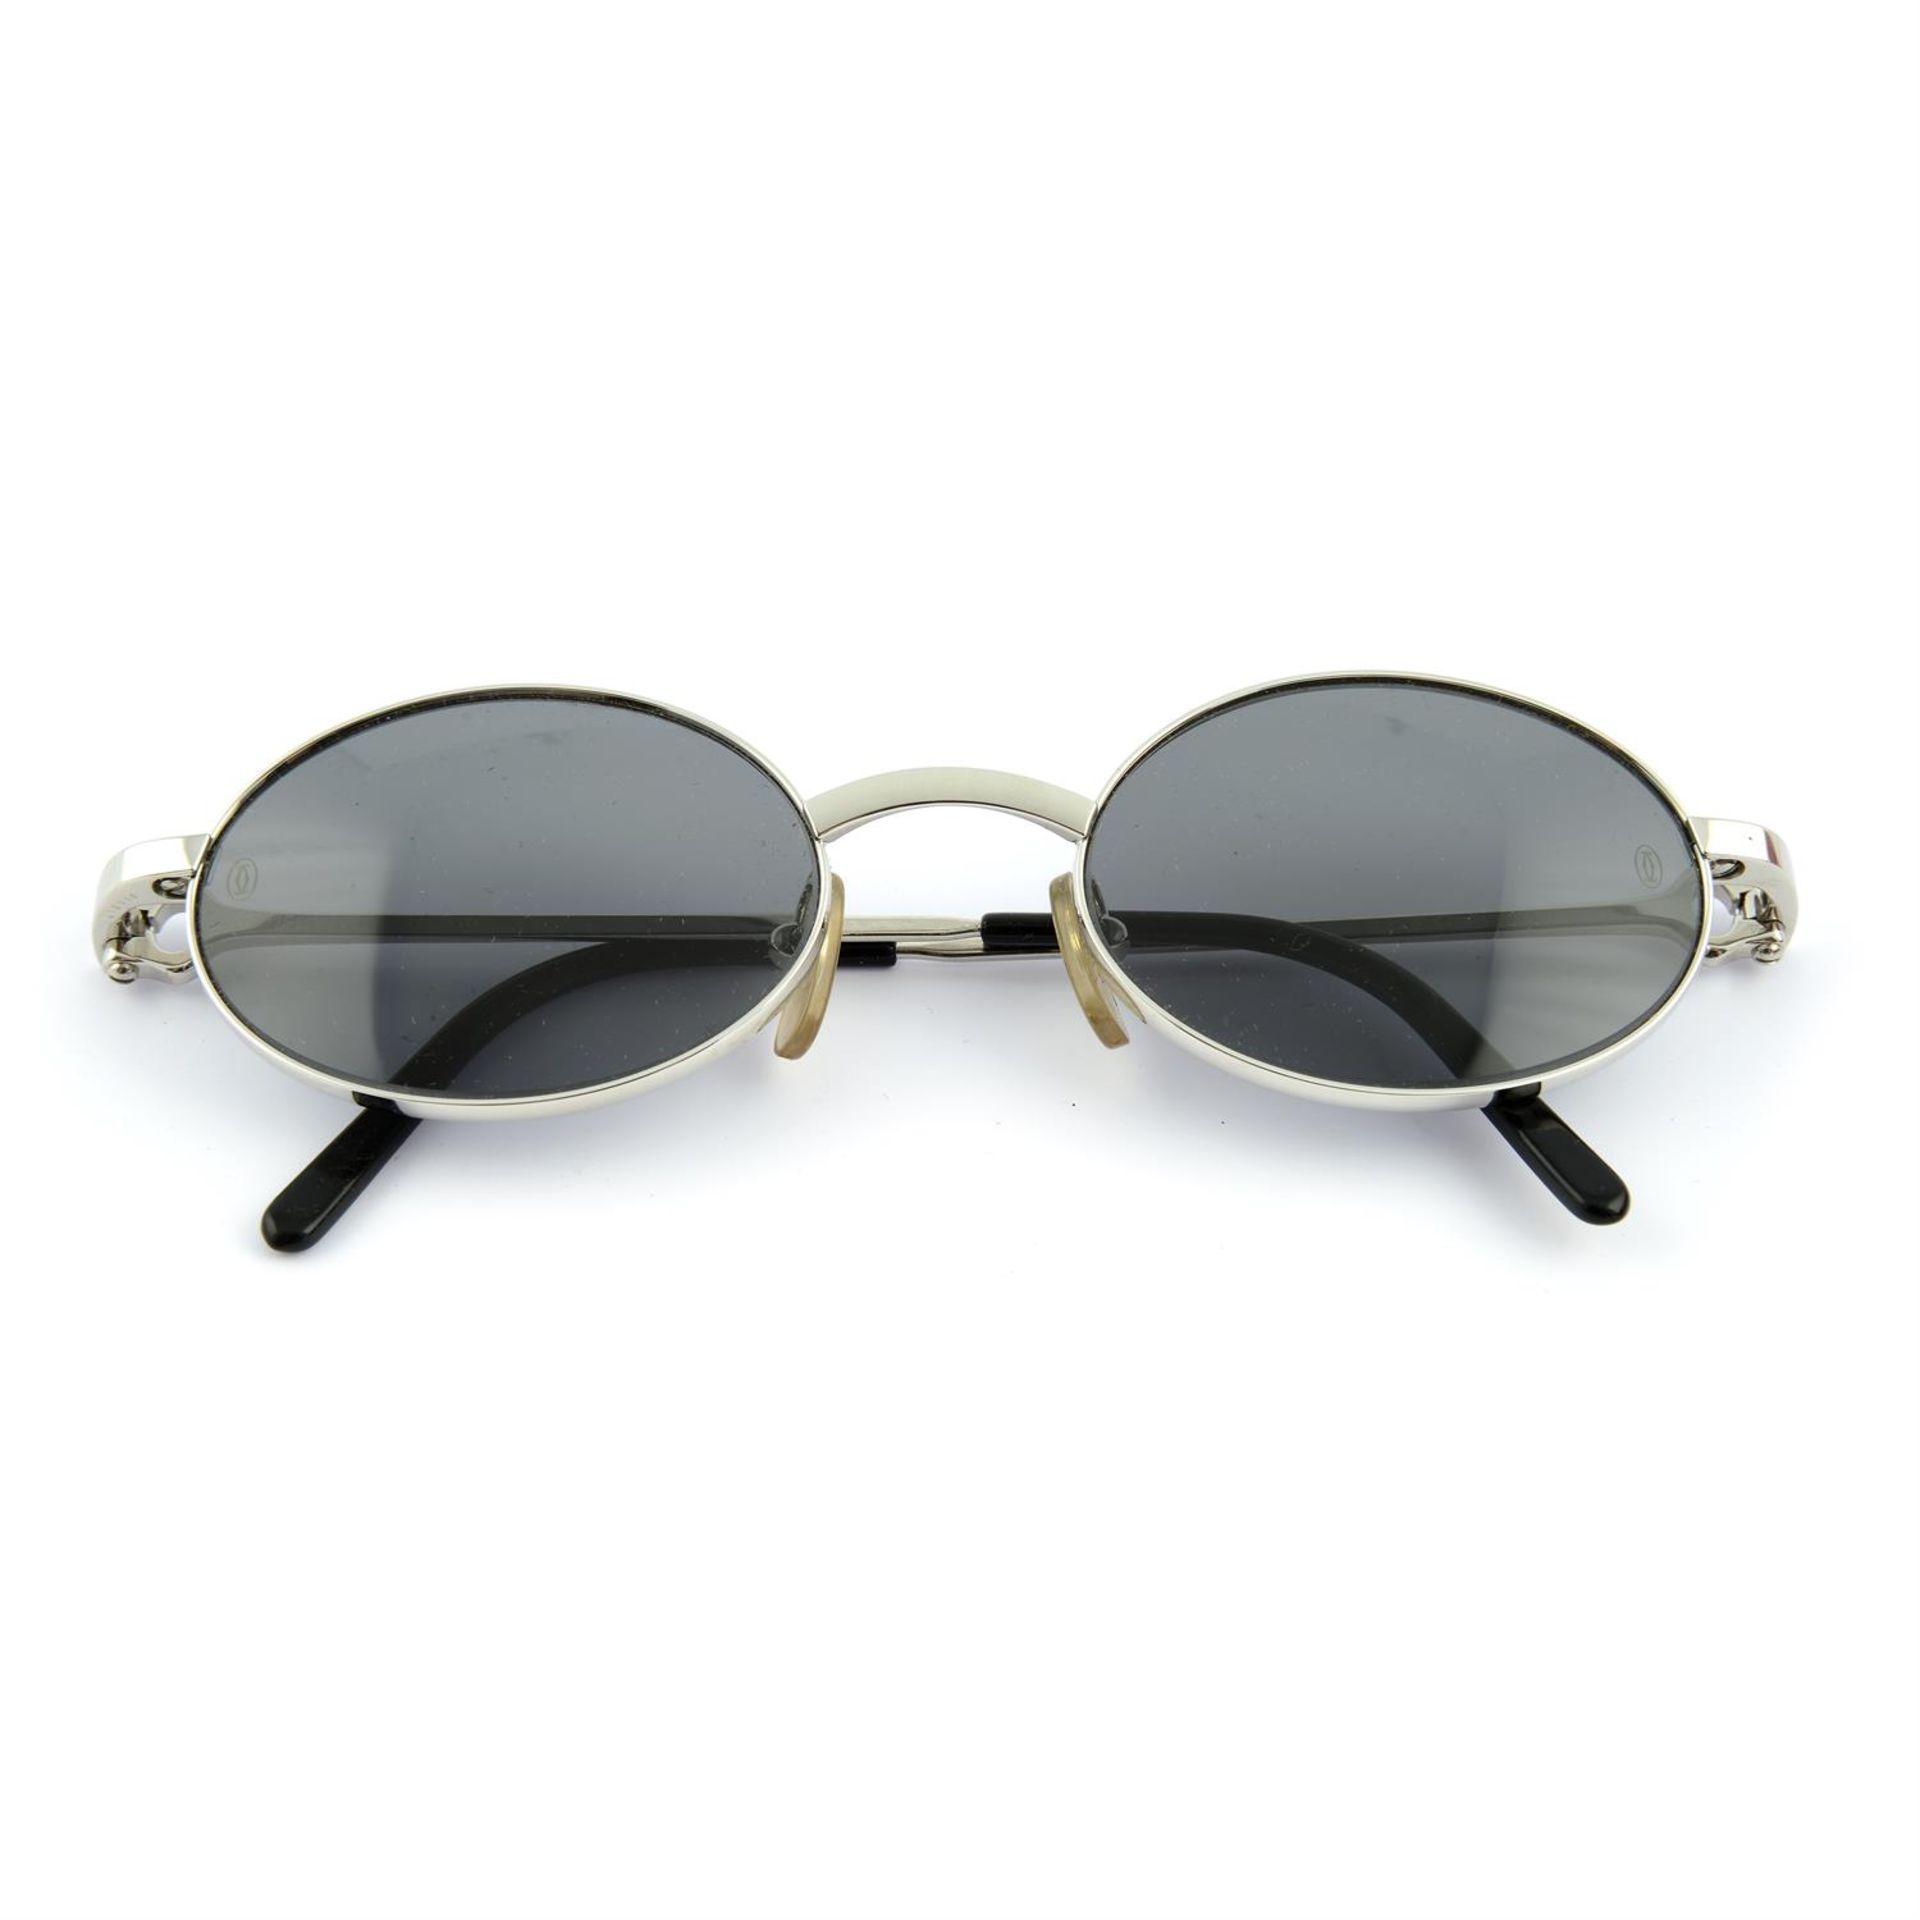 CARTIER - a pair of sunglasses.